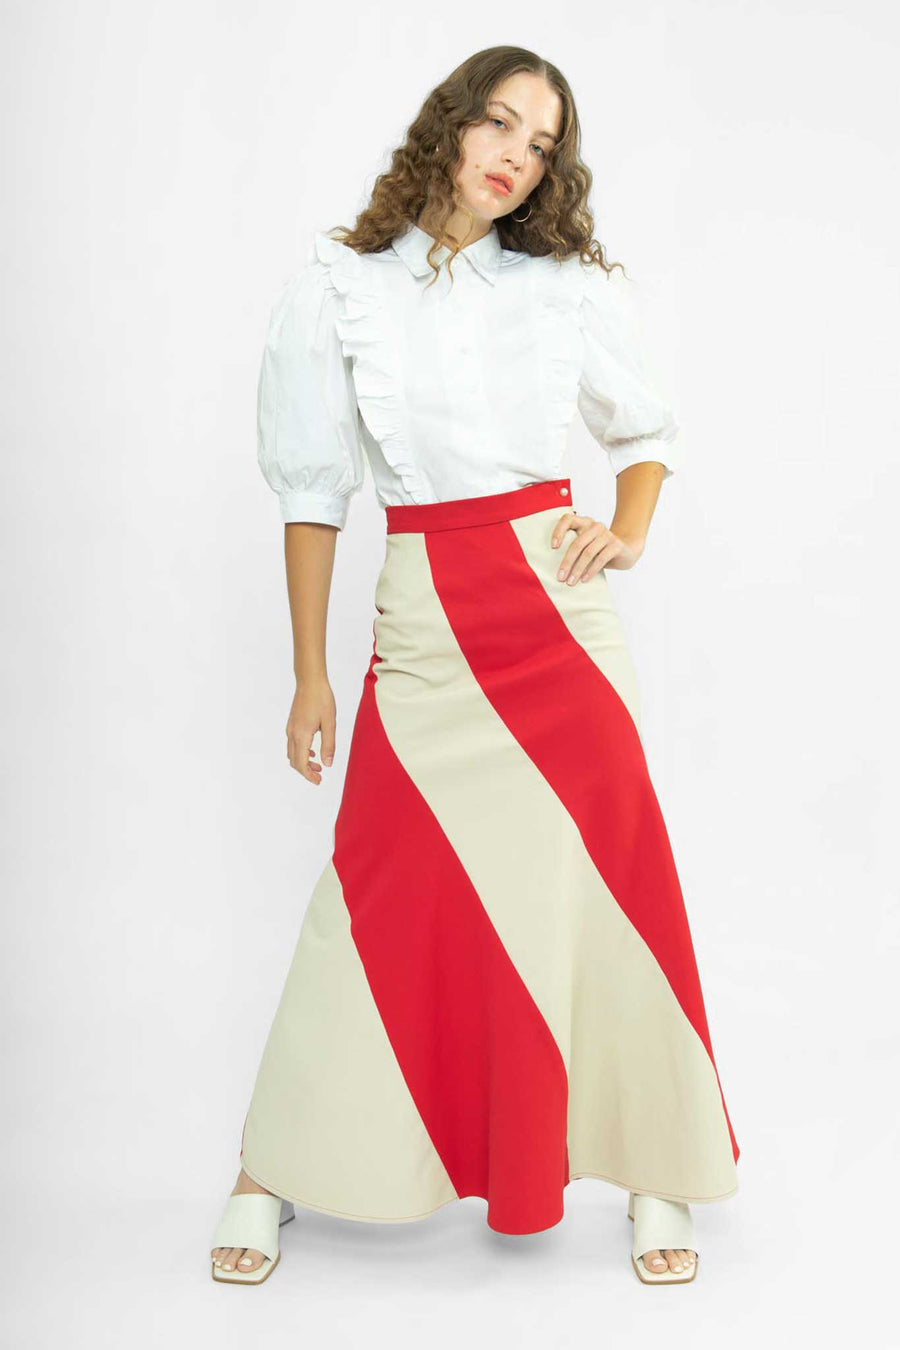 BATSHEVA - Cera Skirt in Red Cotton Twill